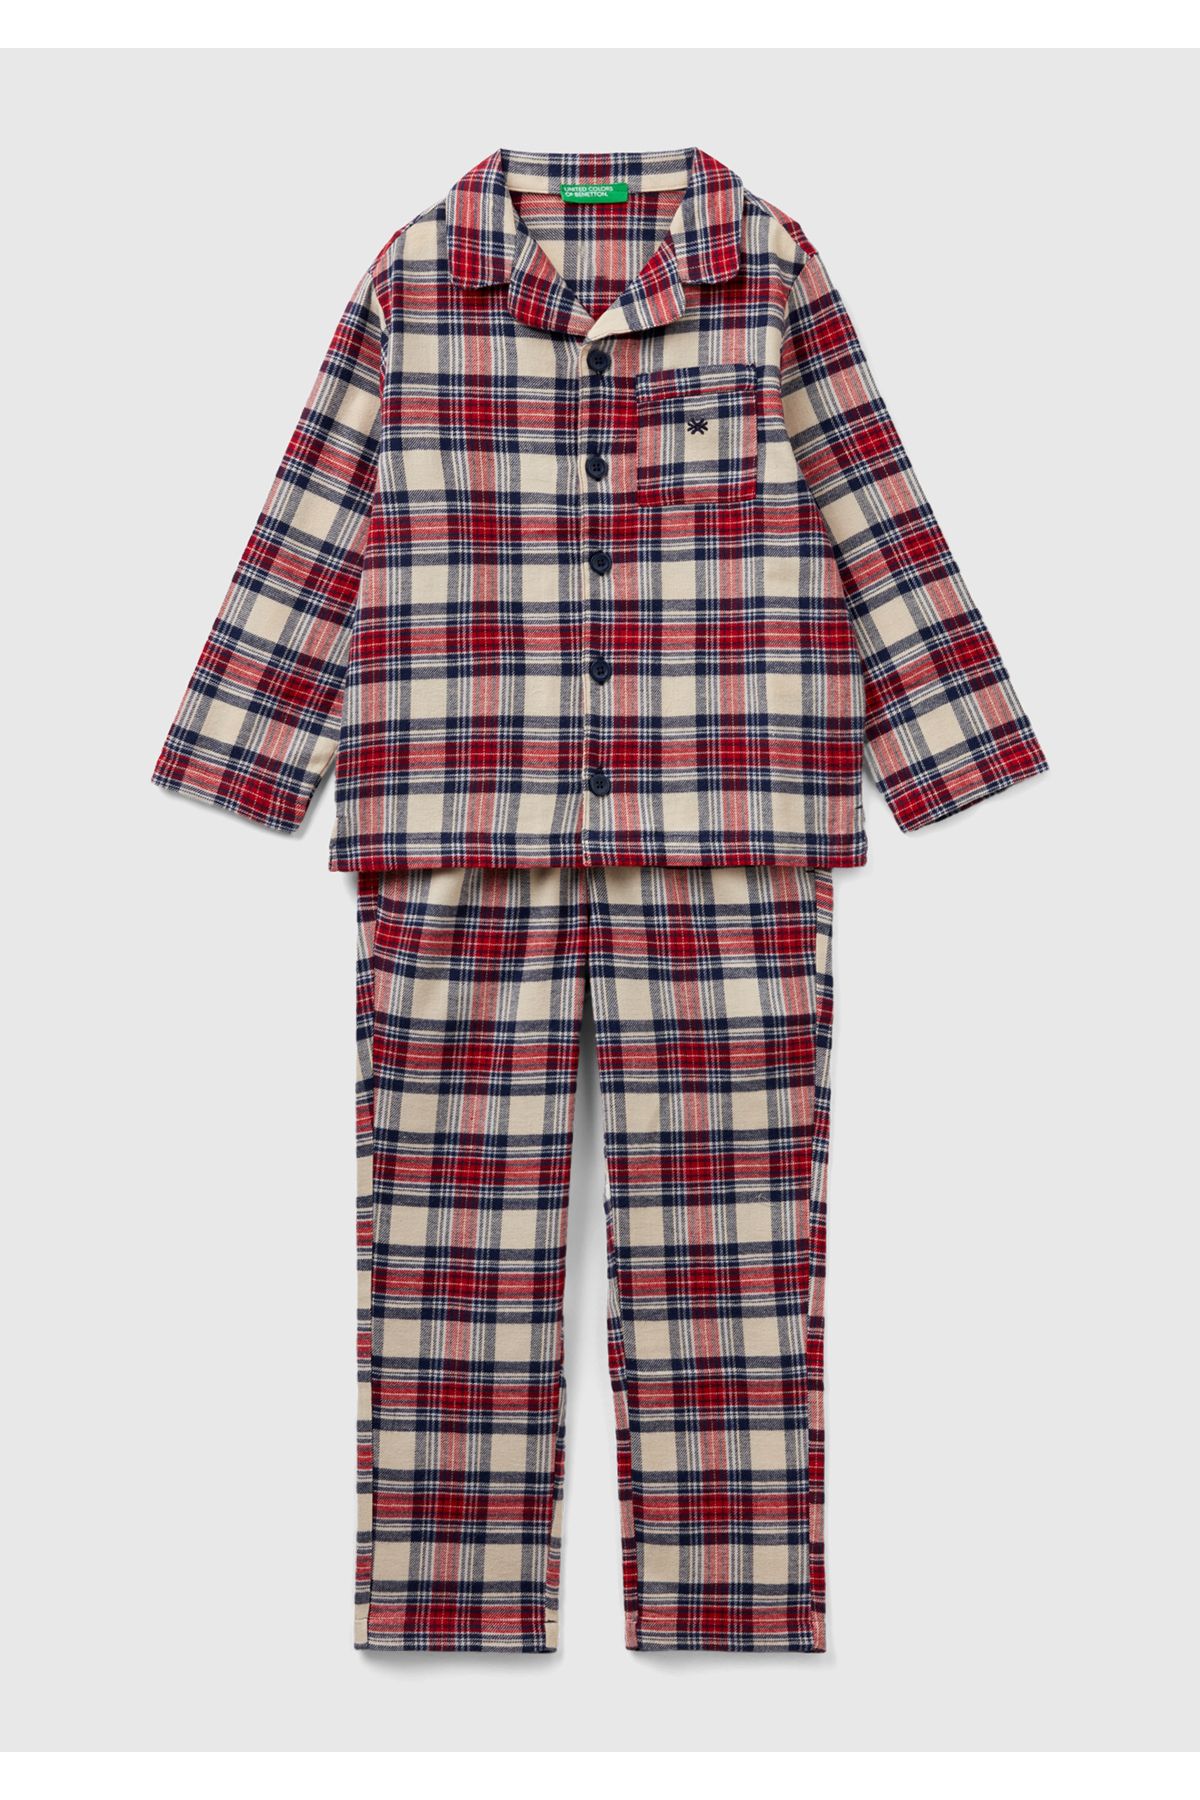 United Colors of Benetton Erkek Çocuk Kırmızı Mix Ekose Desenli Düğmeli Pijama Takımı